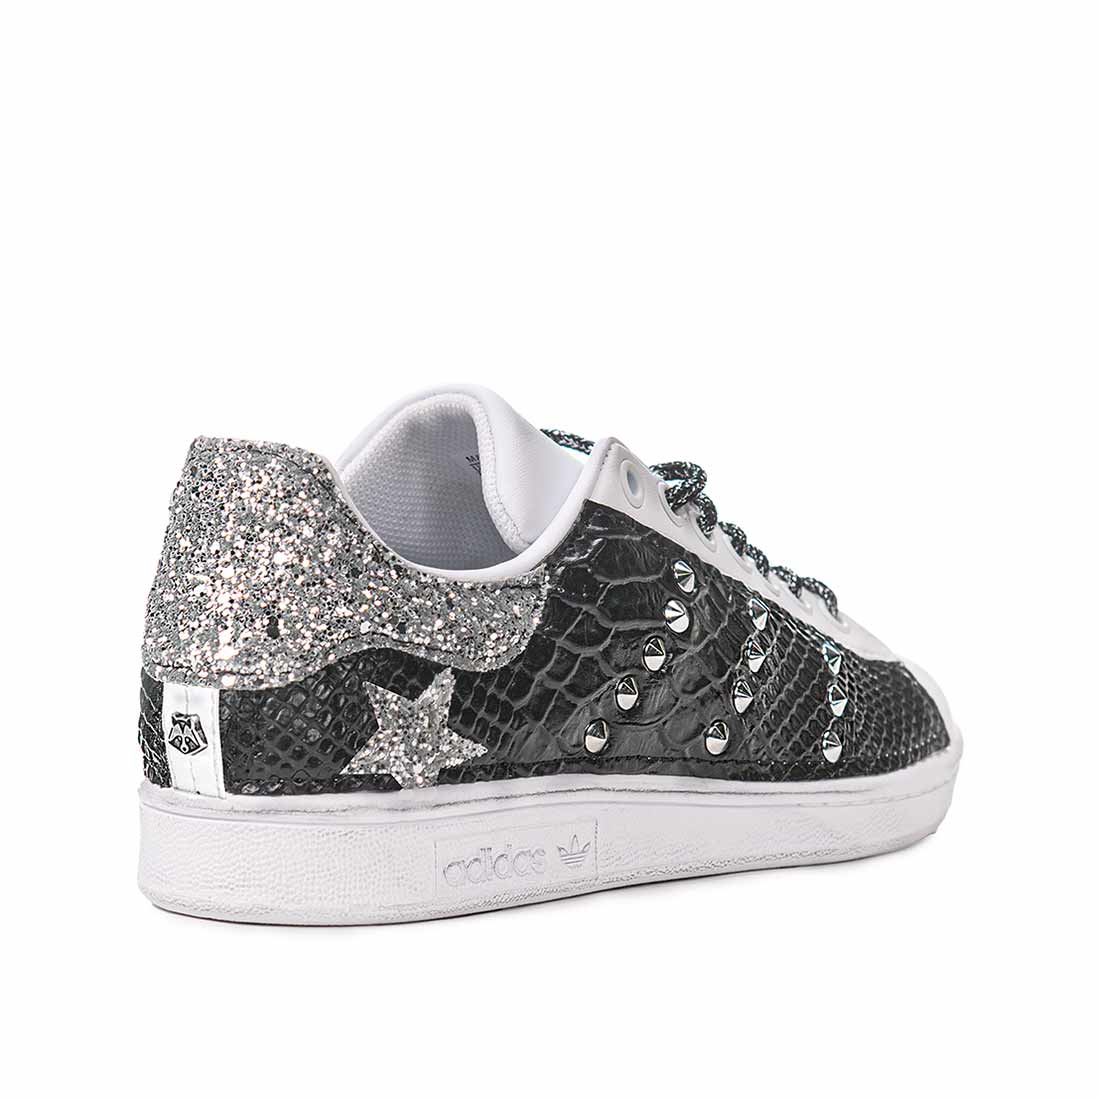 Scarpe da ginnastica adidas bianche con brillantini argento e borchiette animalier lucido nero e lacci brillantinati